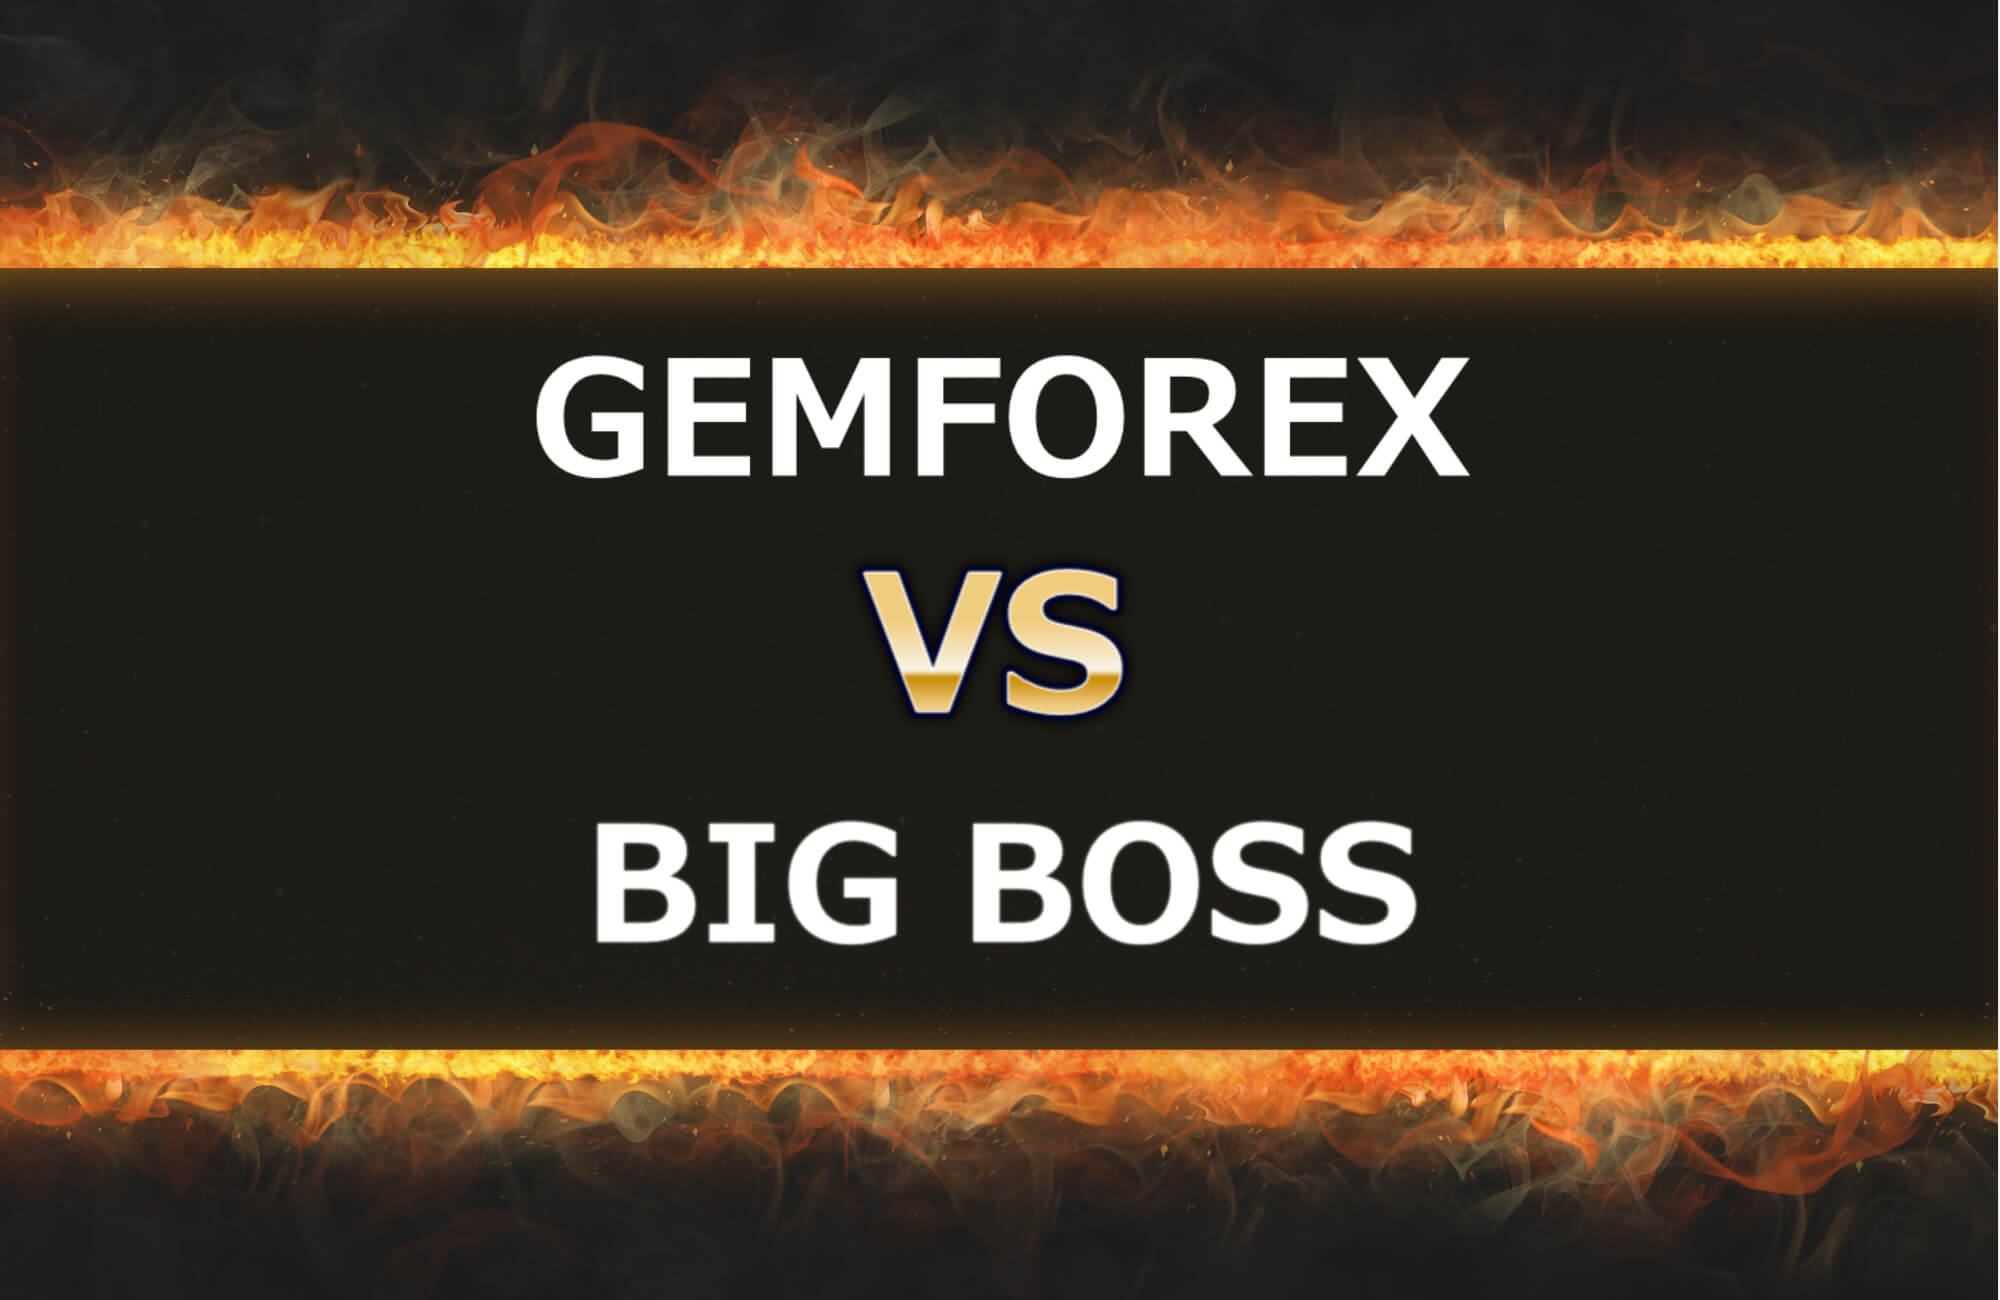 GEMFOREXとBIGBOSS FXを8つの項目で比較